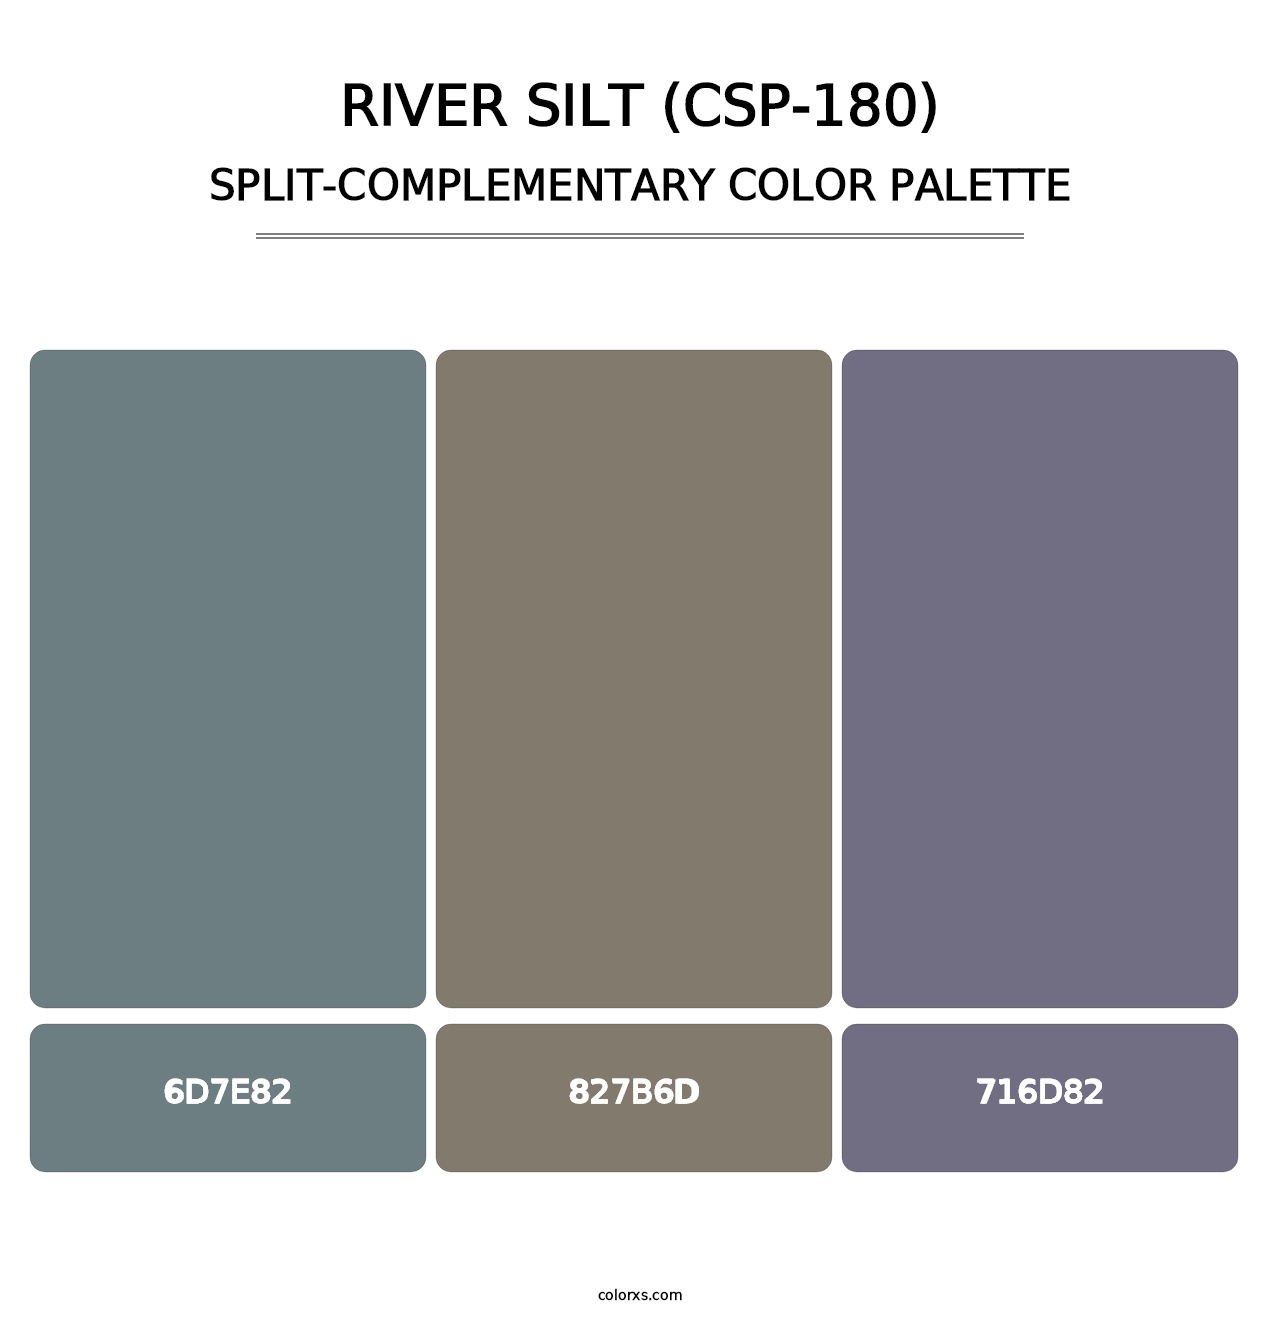 River Silt (CSP-180) - Split-Complementary Color Palette